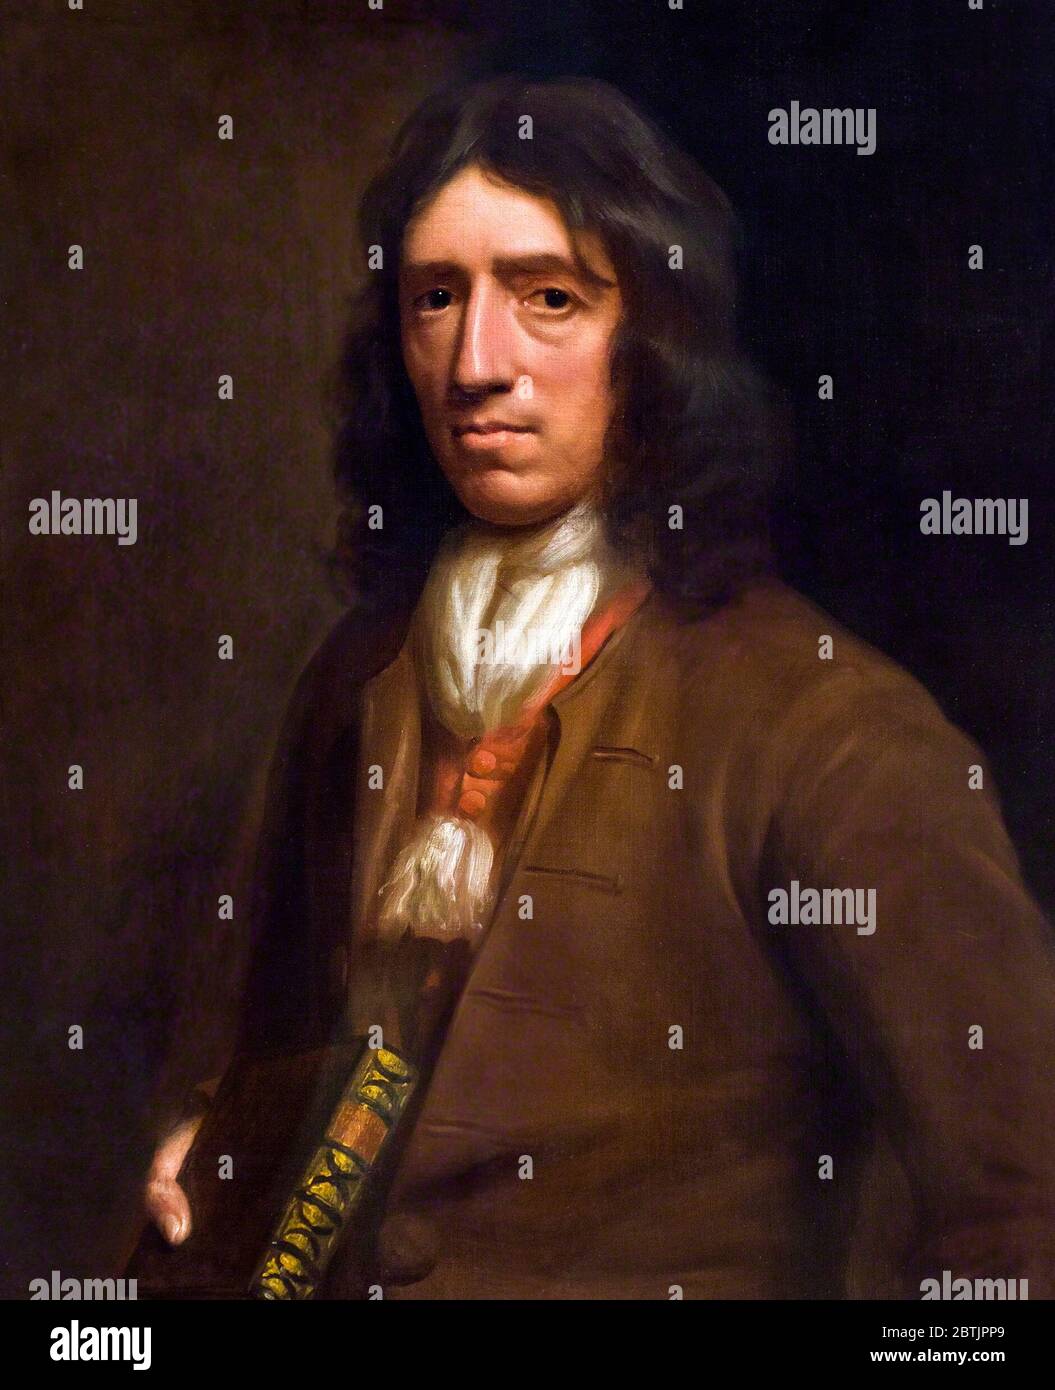 Der englische Forscher und Naturforscher aus dem 17. Jahrhundert, William Dampier (1651-1715) Porträt von Thomas Murray, Öl auf Leinwand, ca. 1697-98. Stockfoto